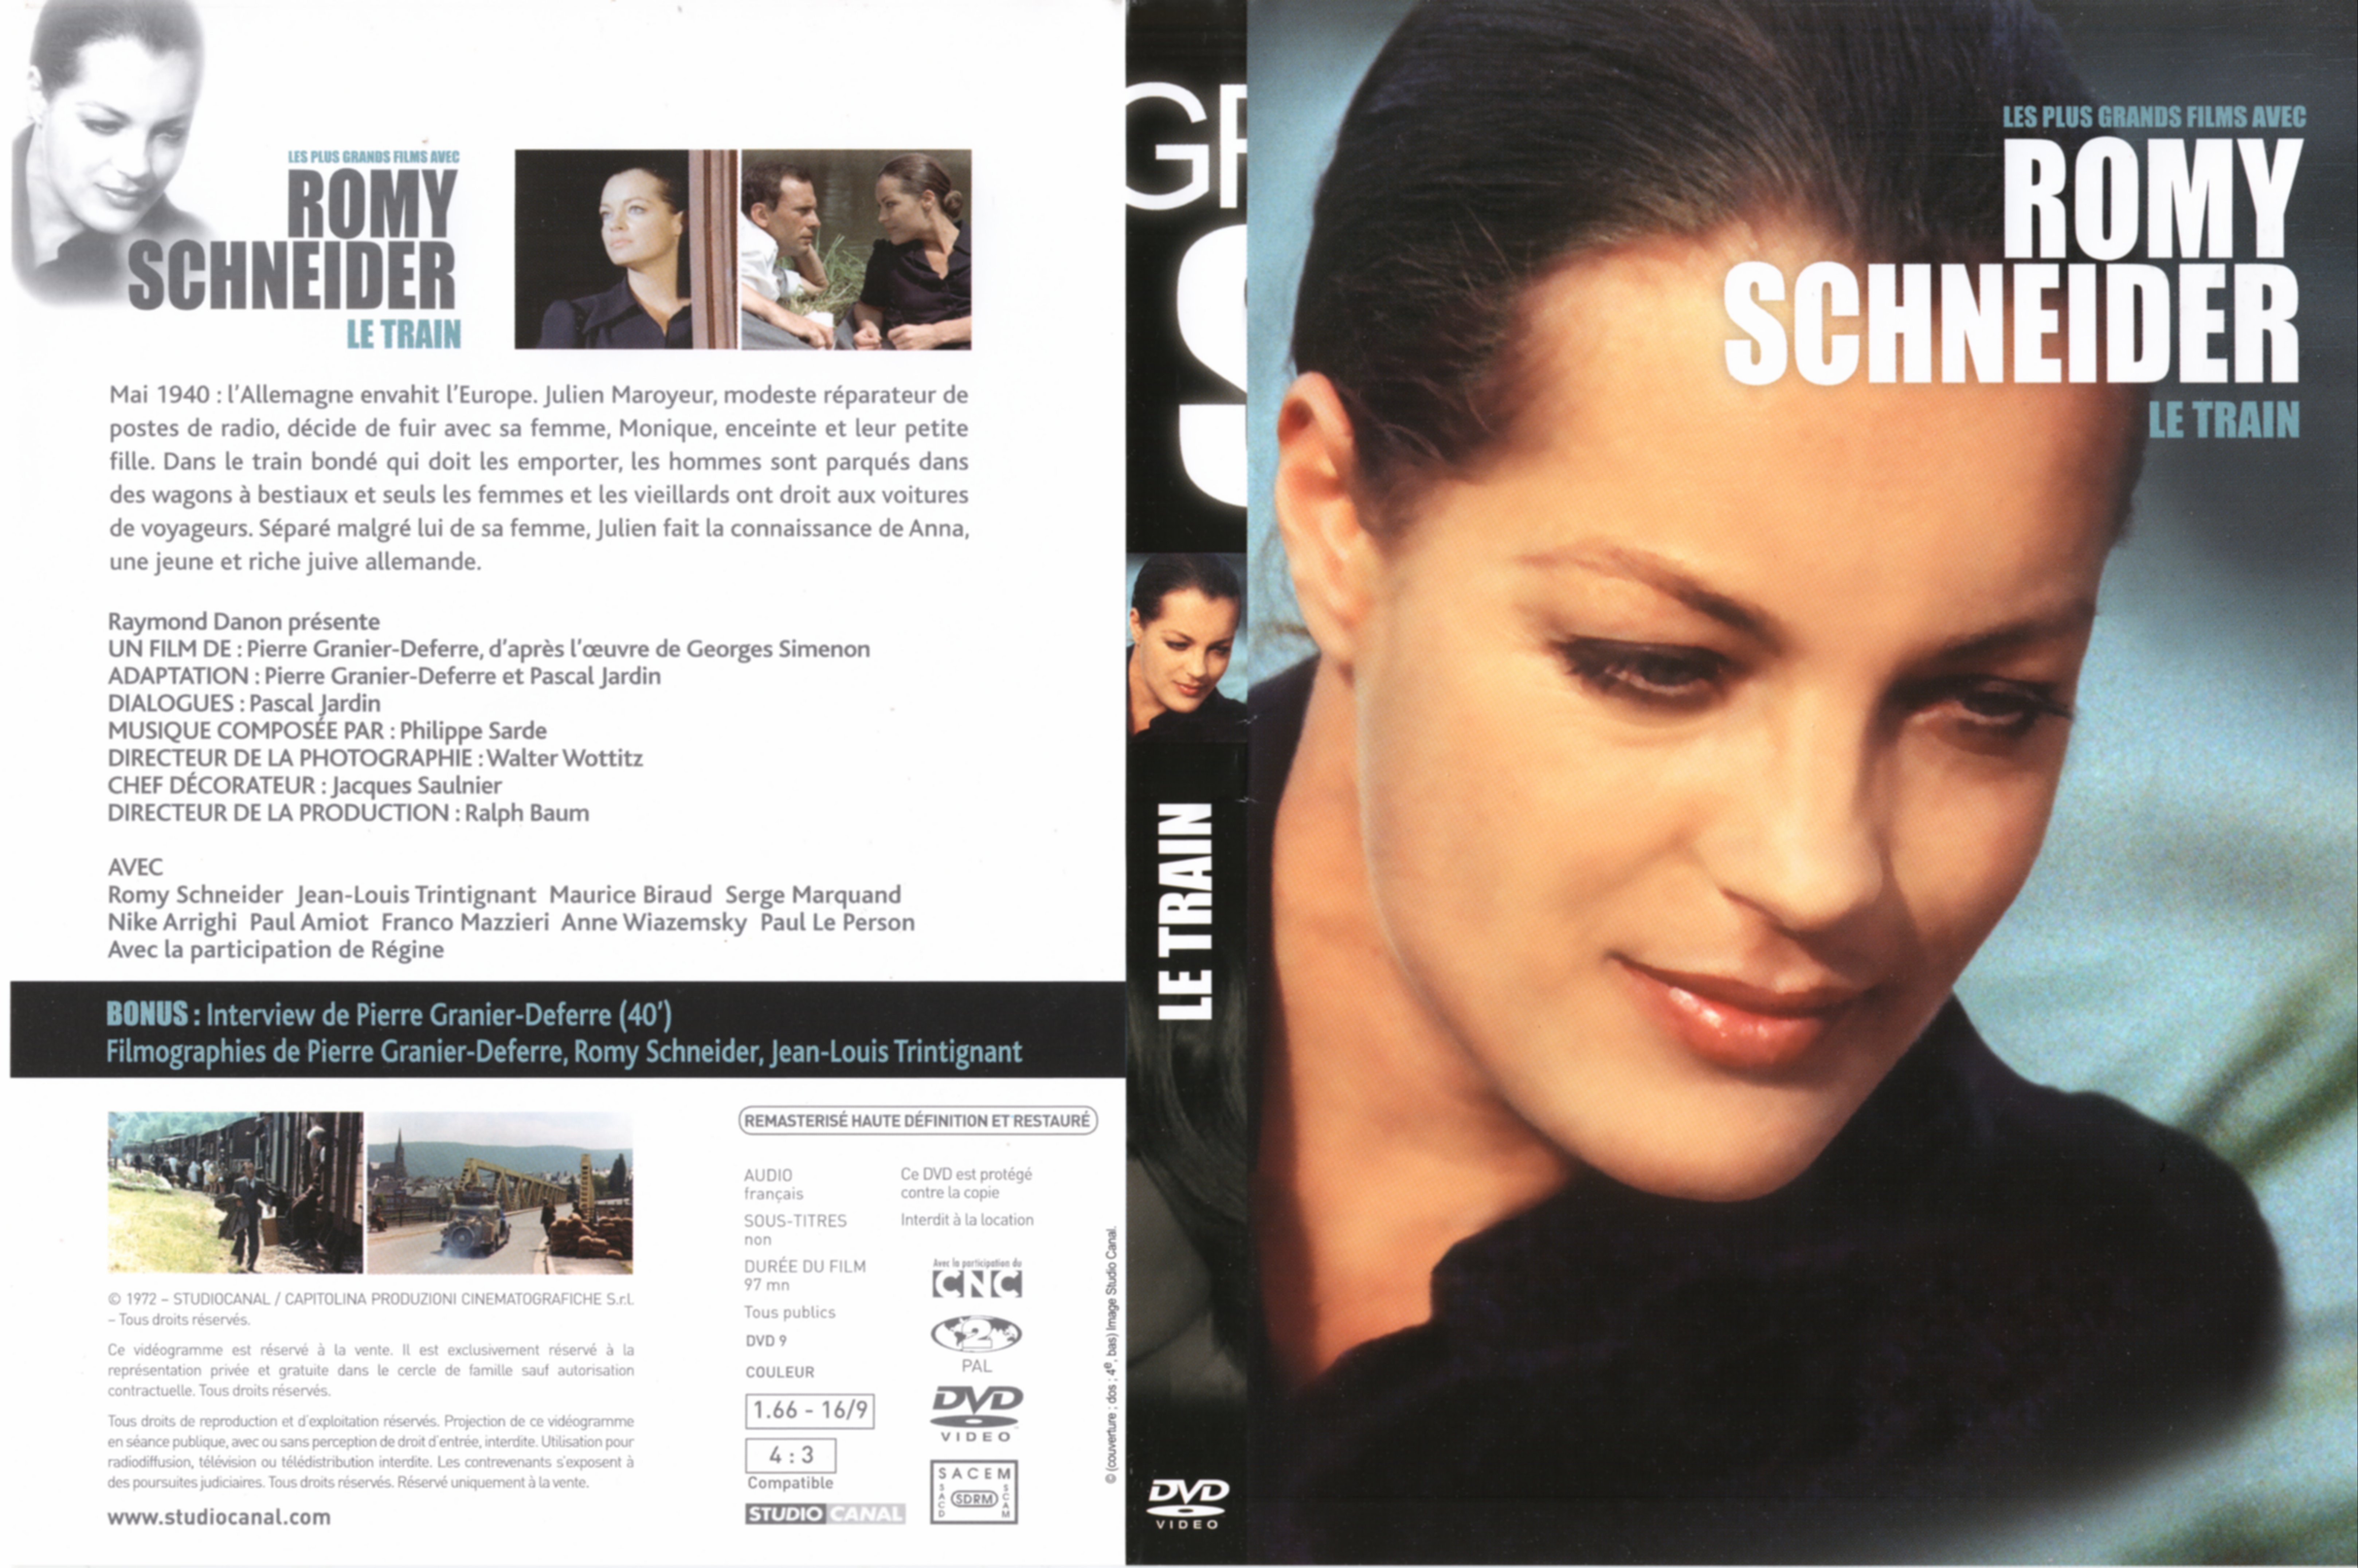 Jaquette DVD Le train (Romy Schneider) v3